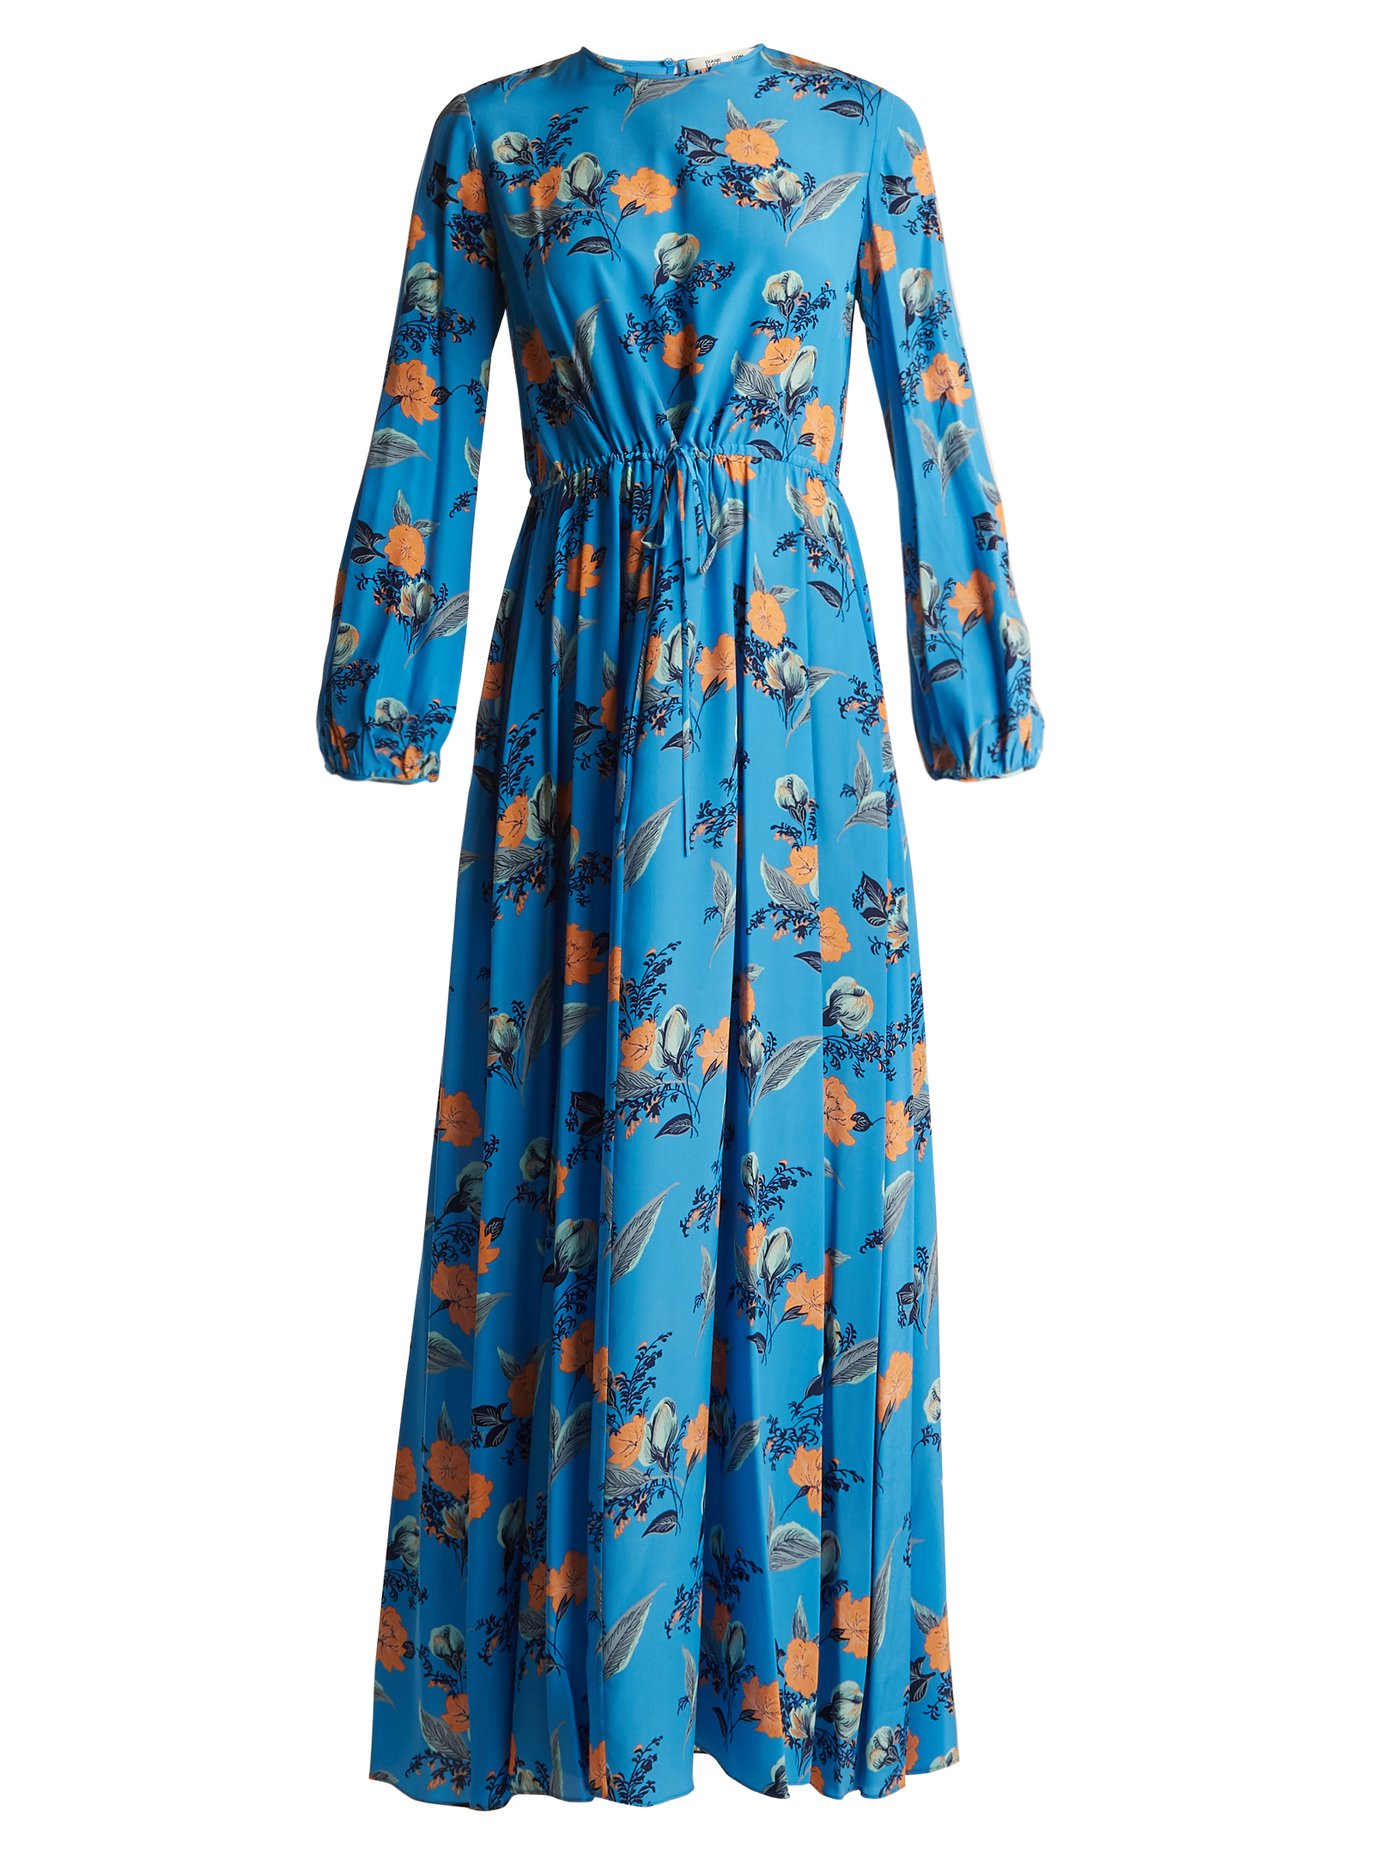 diane von furstenberg floral dress